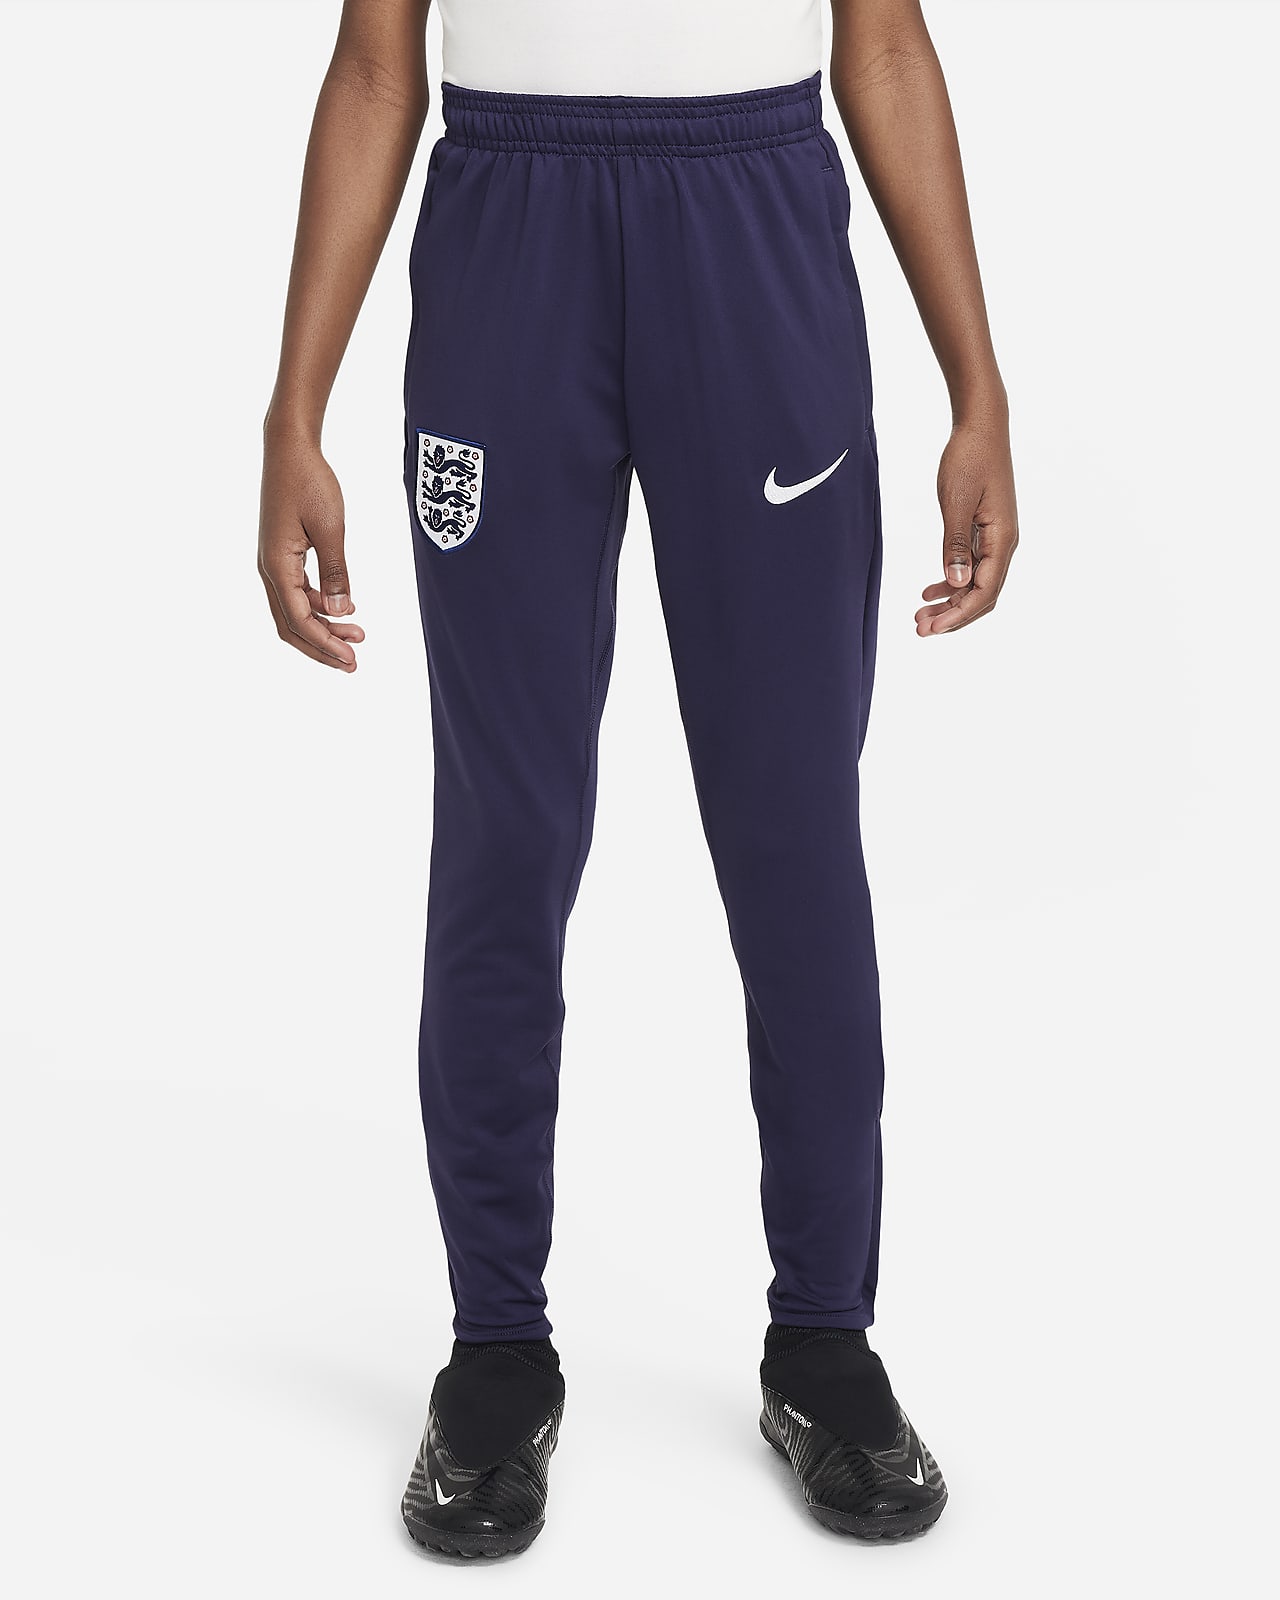 England Strike Nike Dri-FIT strikket fotballbukse til store barn